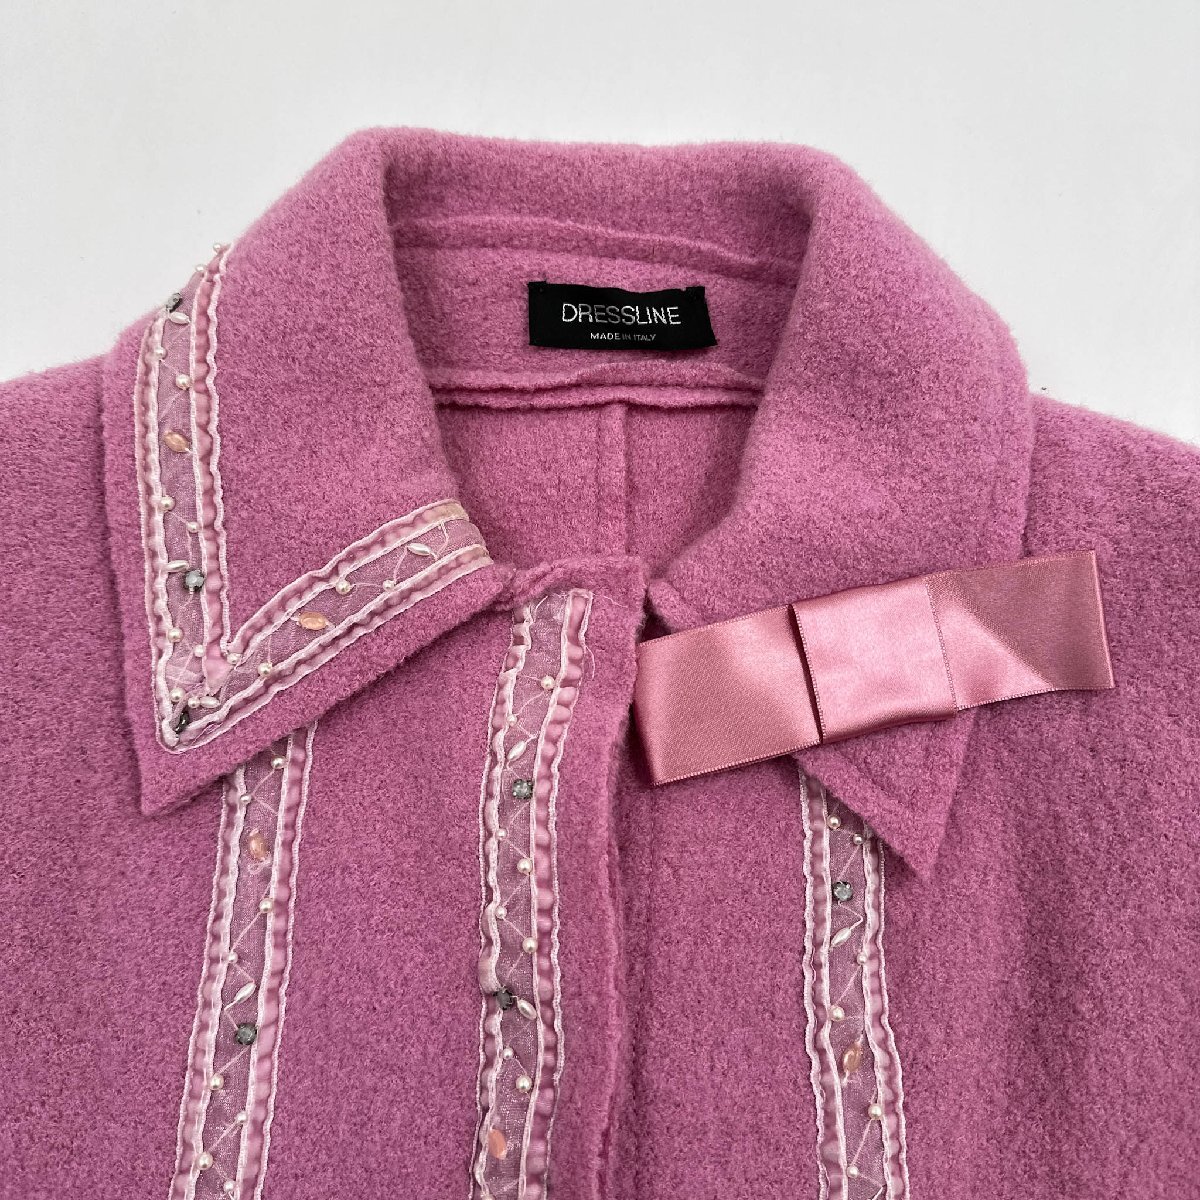  Италия производства *DRESSLINE платье линия лента бисер дизайн шерсть жакет женский / размер S/ розовый / retro 